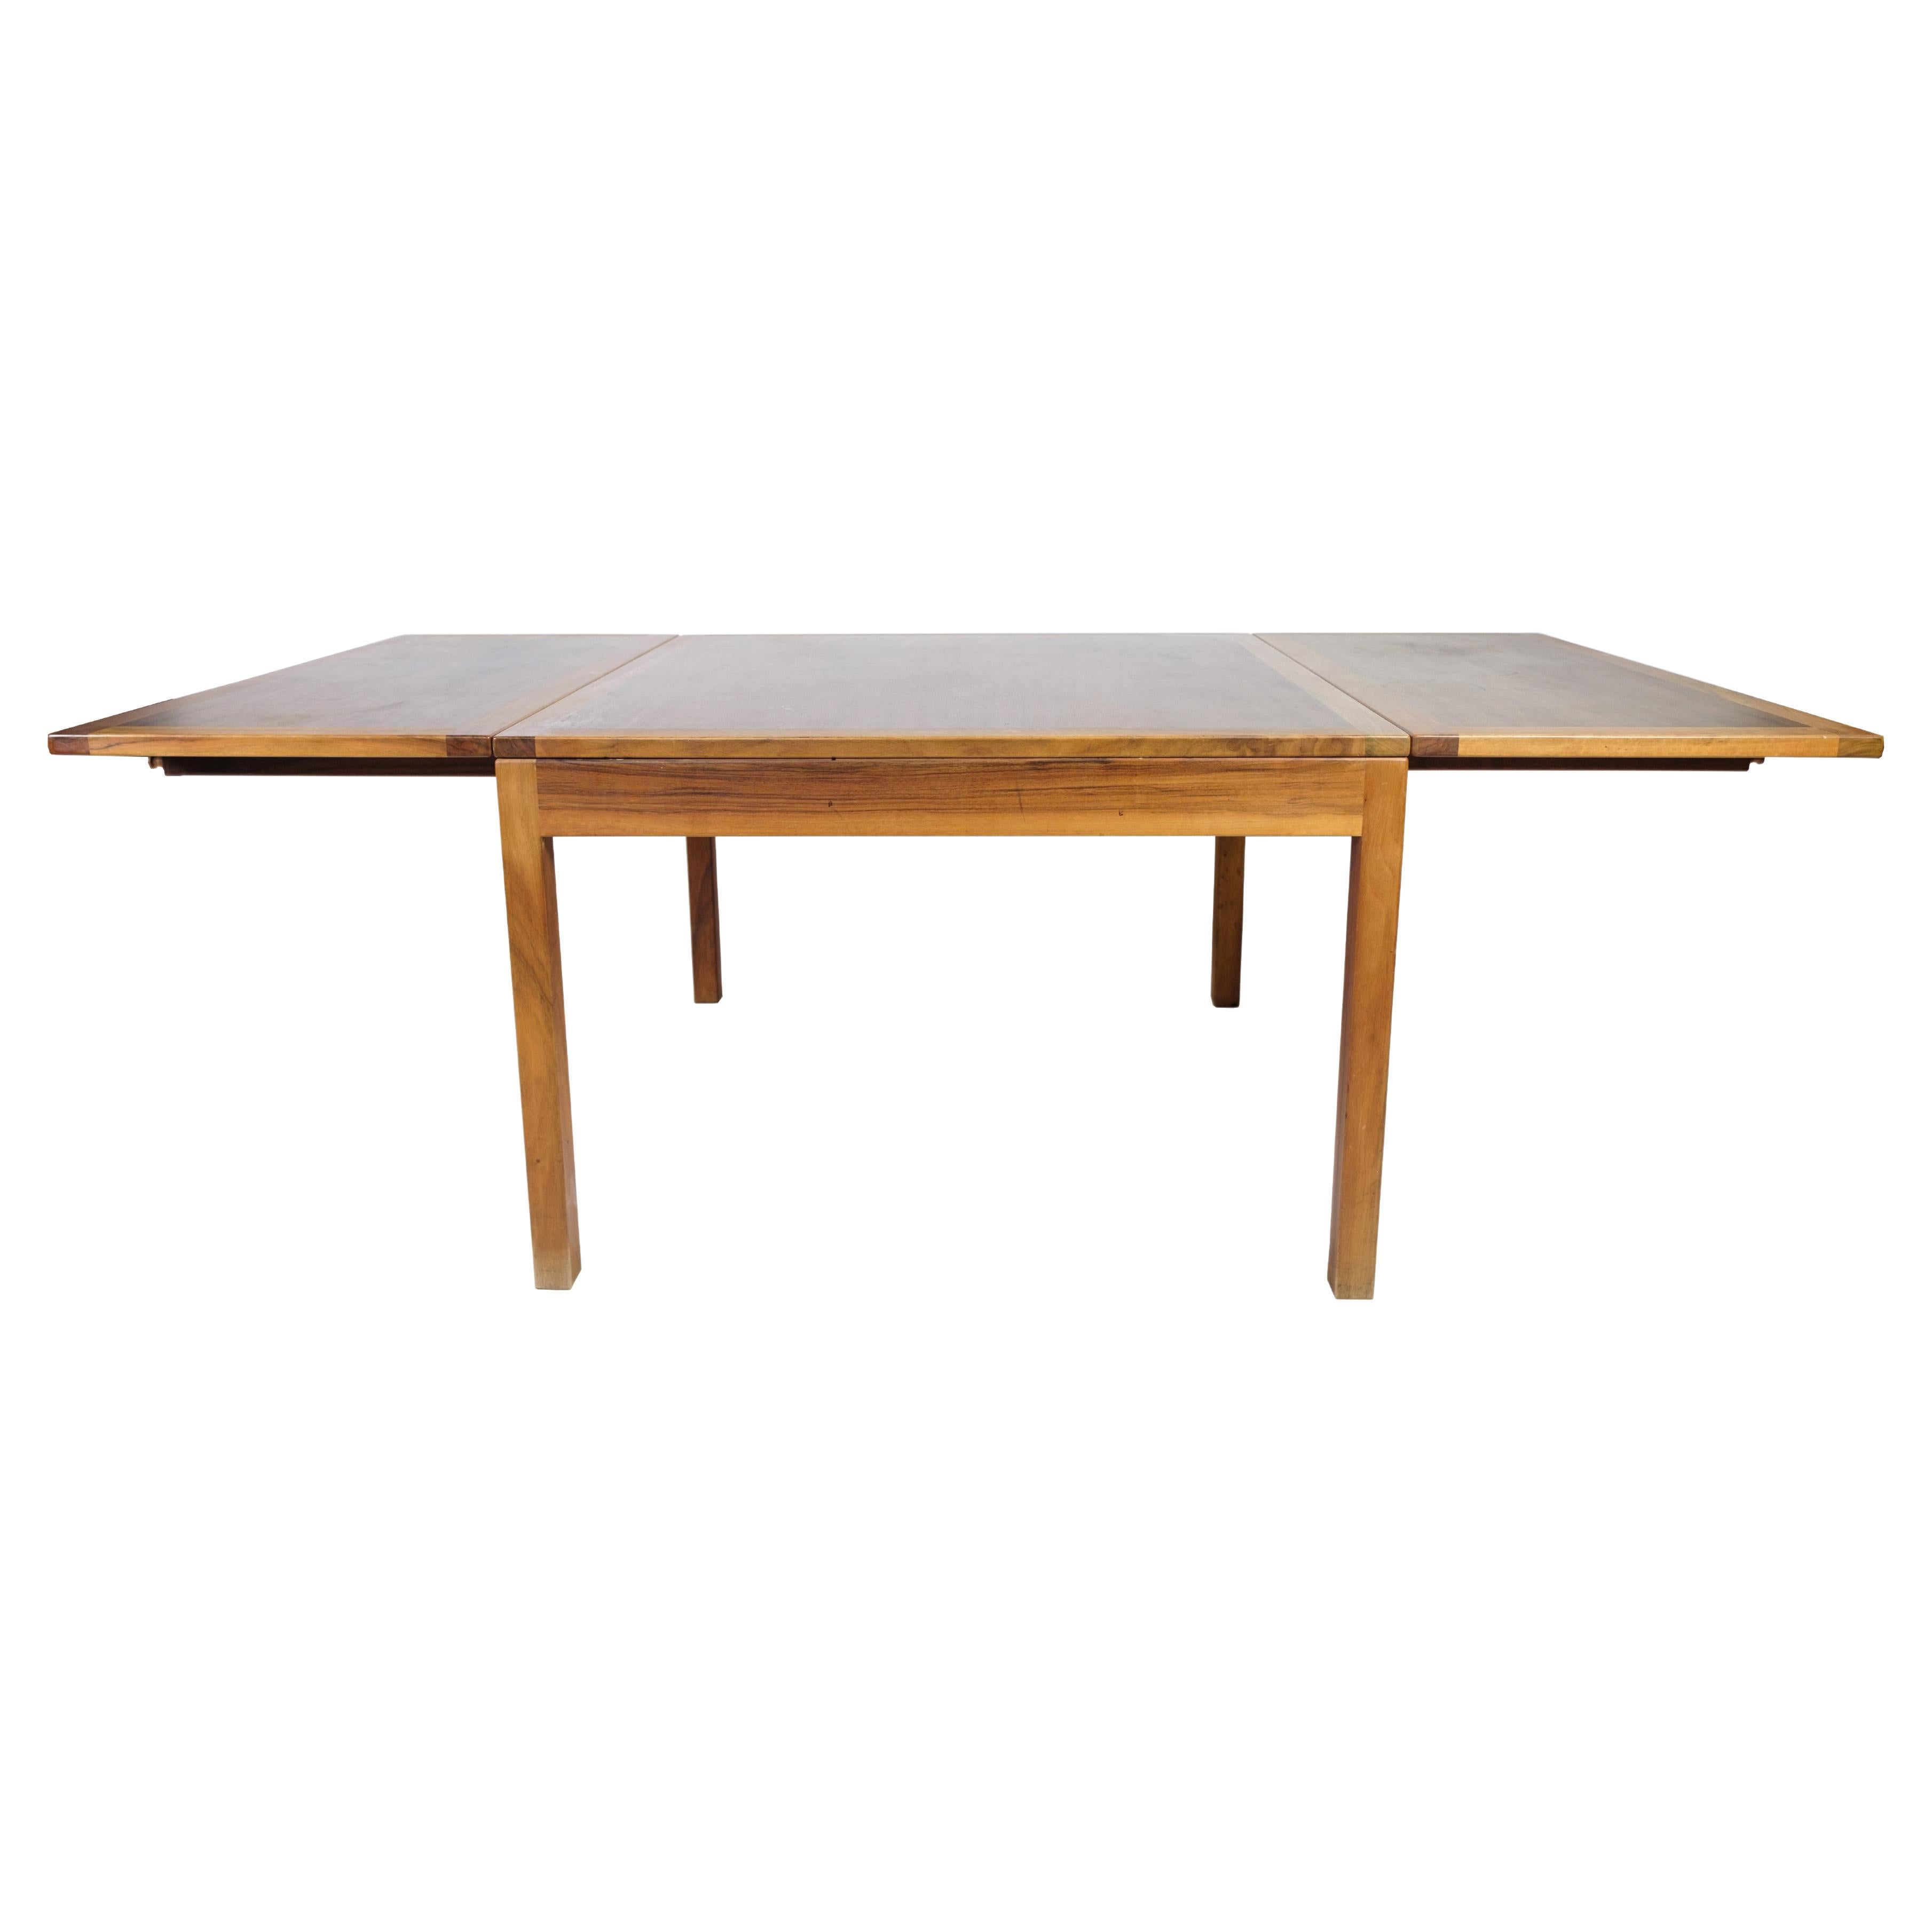 Cette table basse, fabriquée en acajou/noyer et portant le numéro de modèle 5362, met en valeur les prouesses du célèbre designer danois Børge Mogensen et est fabriquée par Fredericia Furniture.

La praticité rencontre l'élégance avec des rabats qui